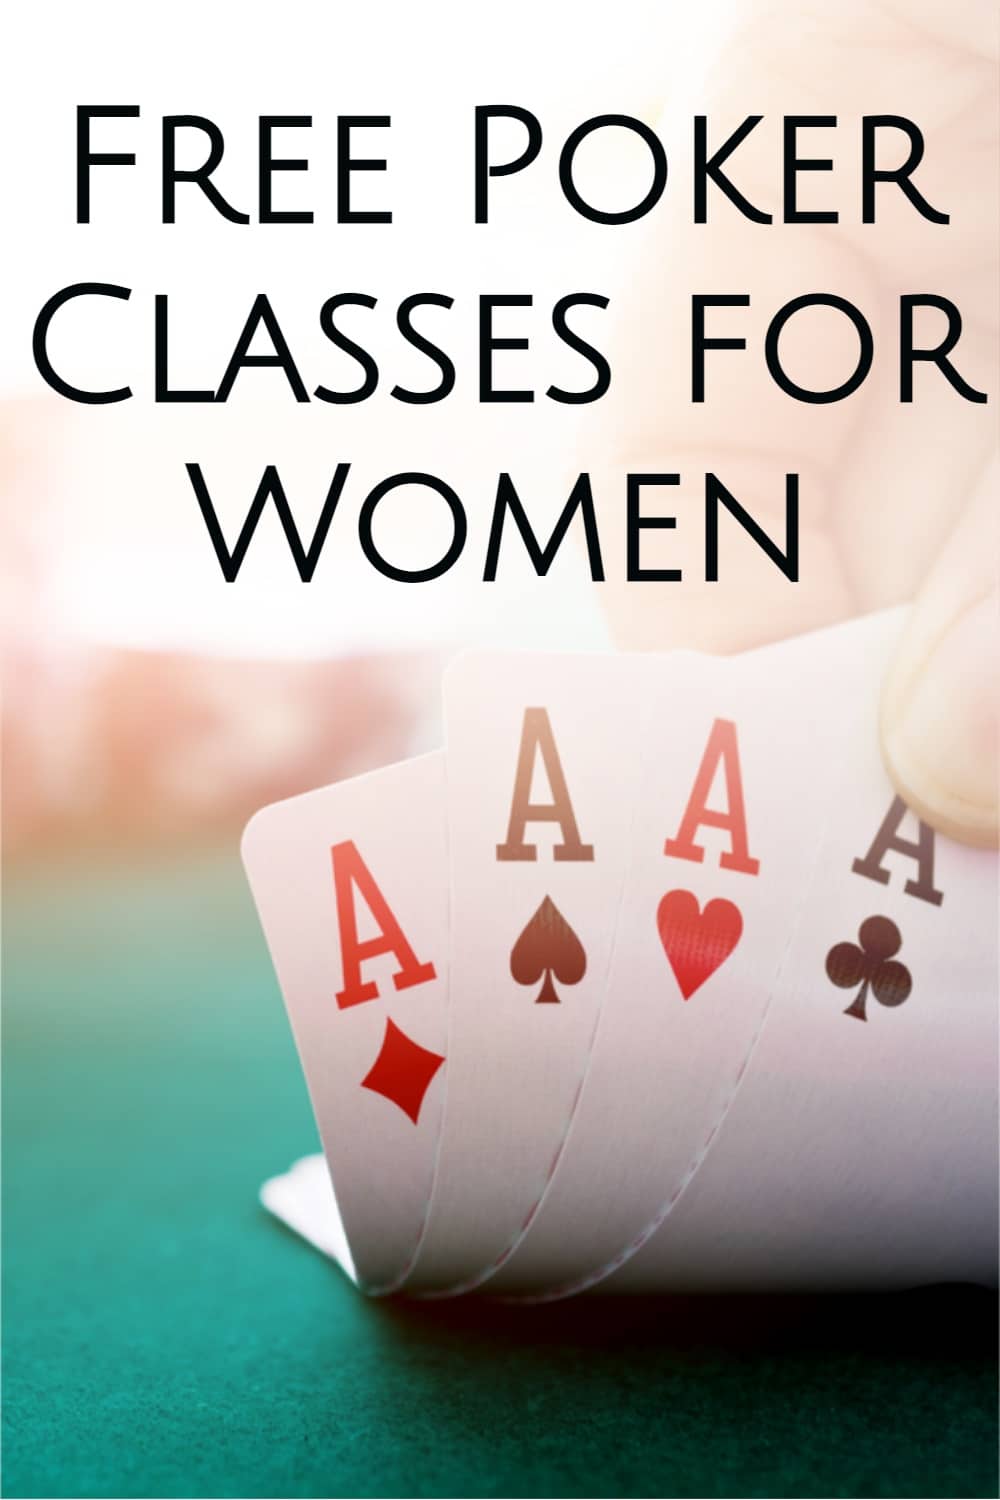 Free poker classes for women